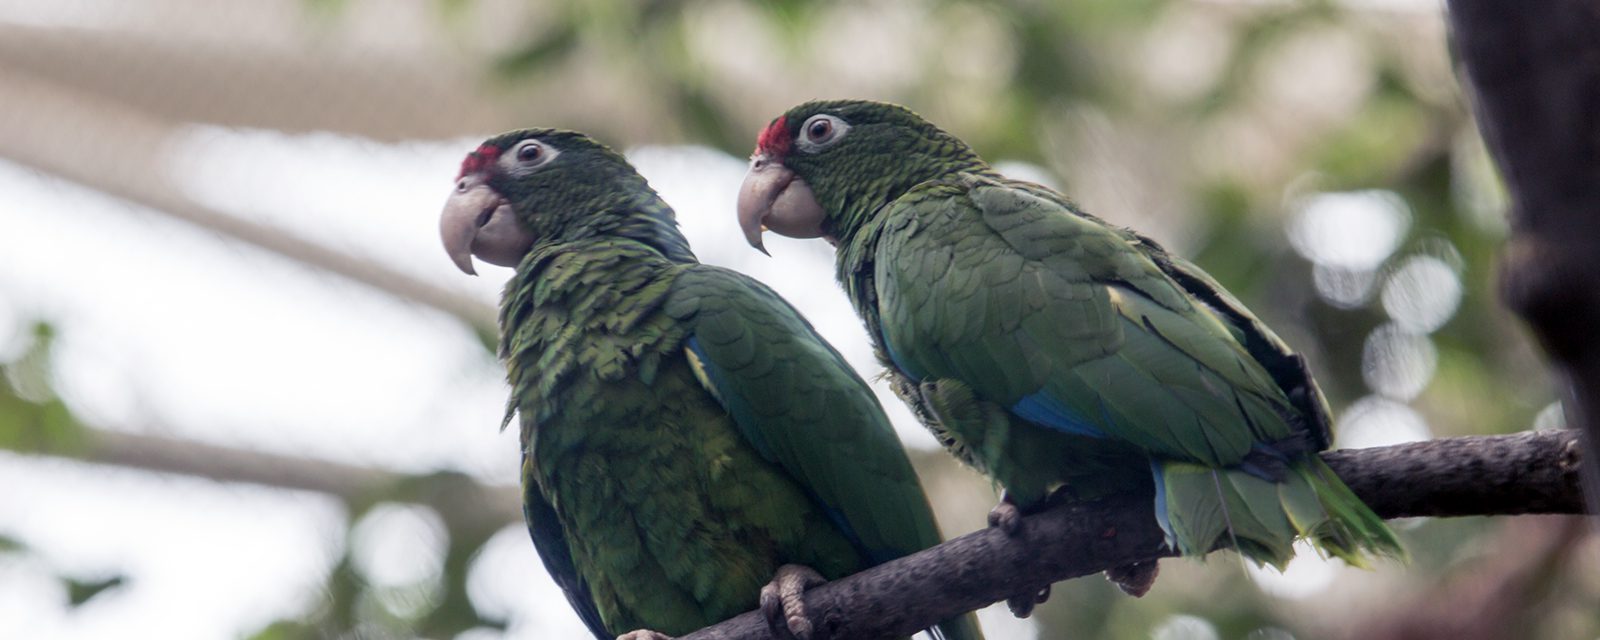 Two Puerto Rican parrots in exhibit